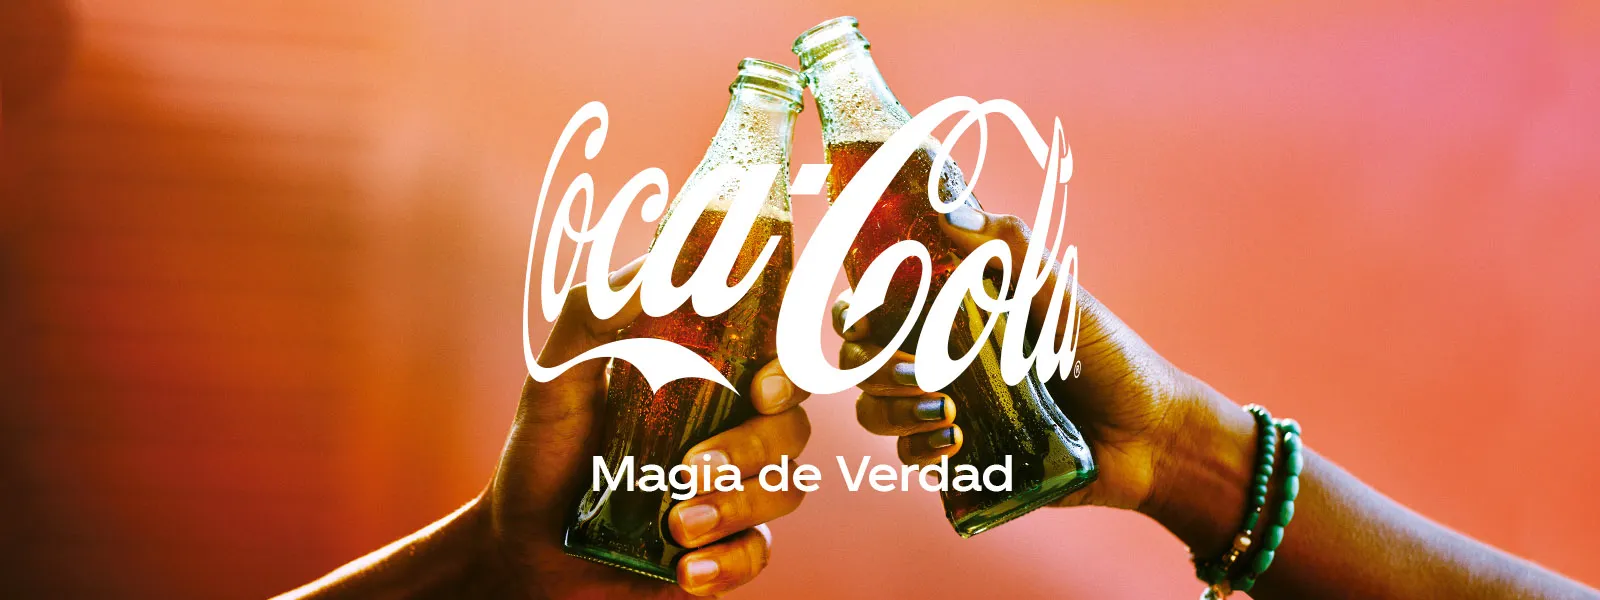 Dos manos sosteniendo una botella de Coca-Cola